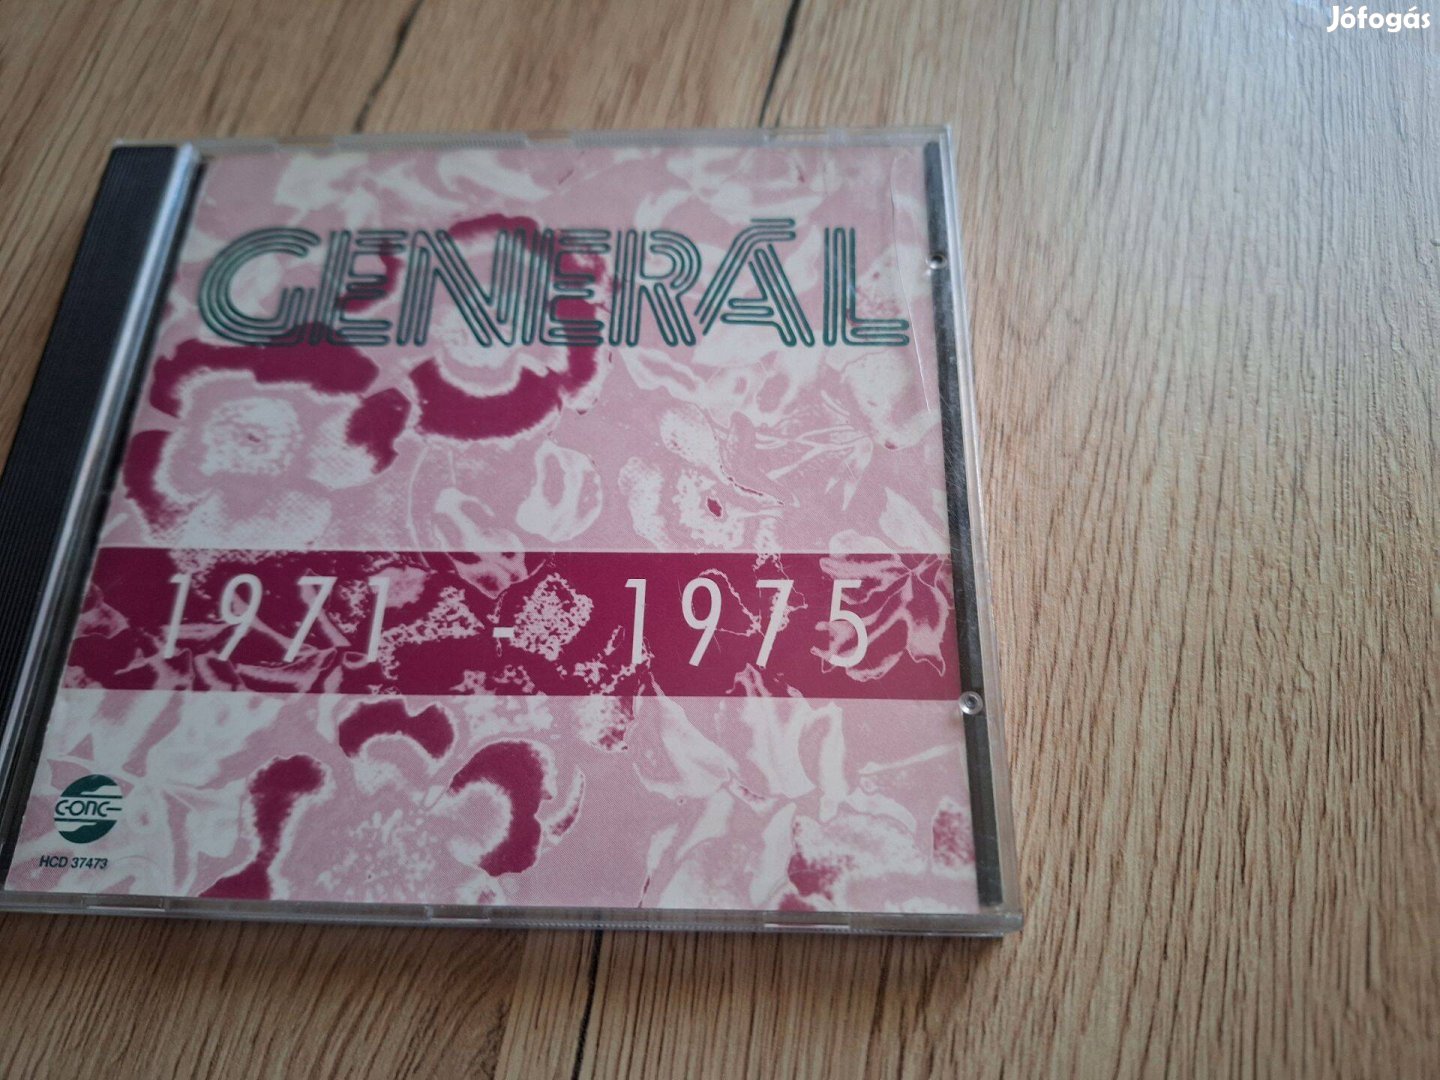 Generál 1971 - 1975 CD lemez!